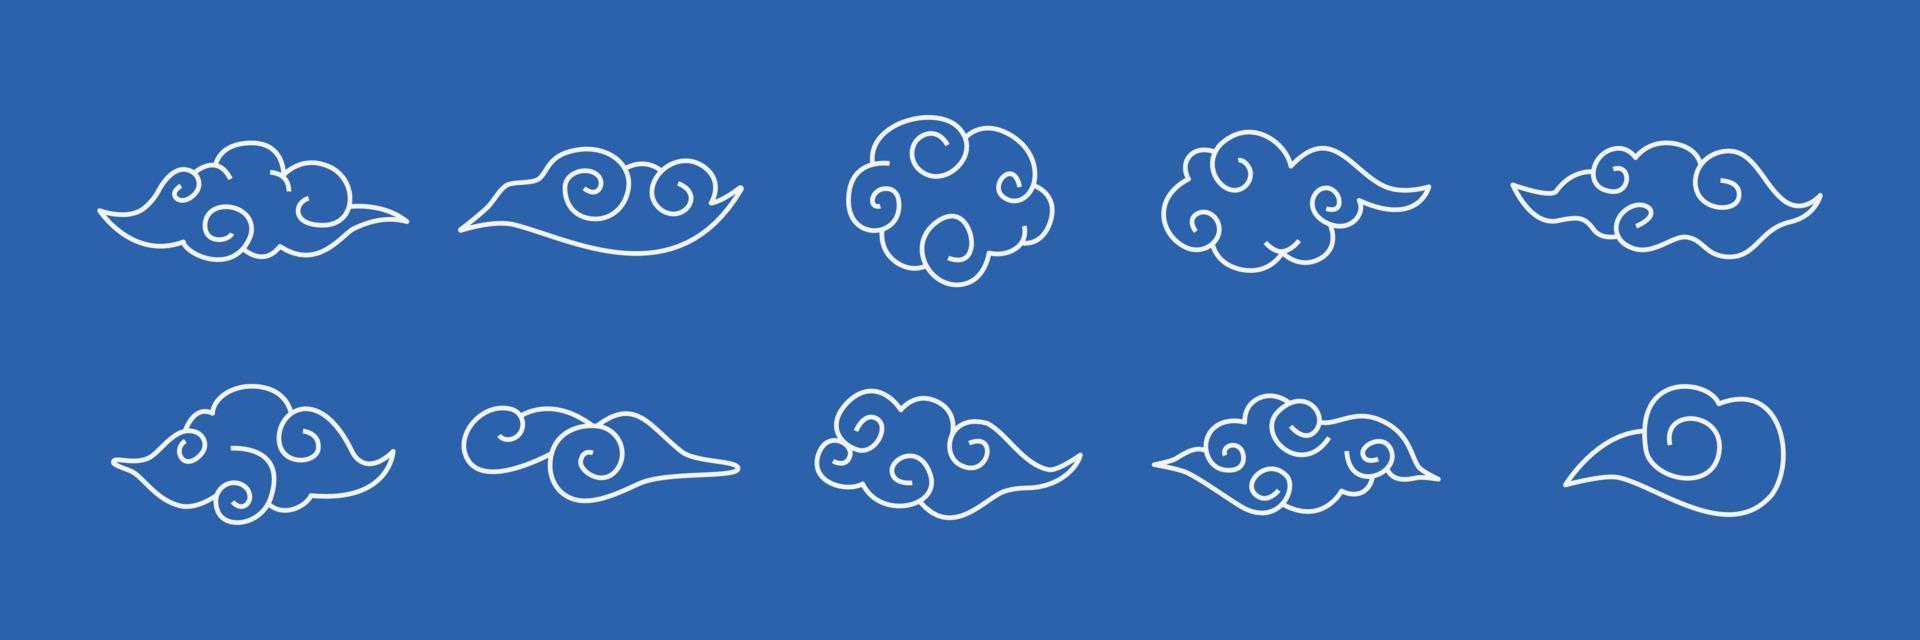 conjunto de design de ilustração de nuvem oriental. elementos de nuvens em estilo chinês. ornamento de arte de clipe desenhado à mão linear para design contemporâneo elegante. vetor